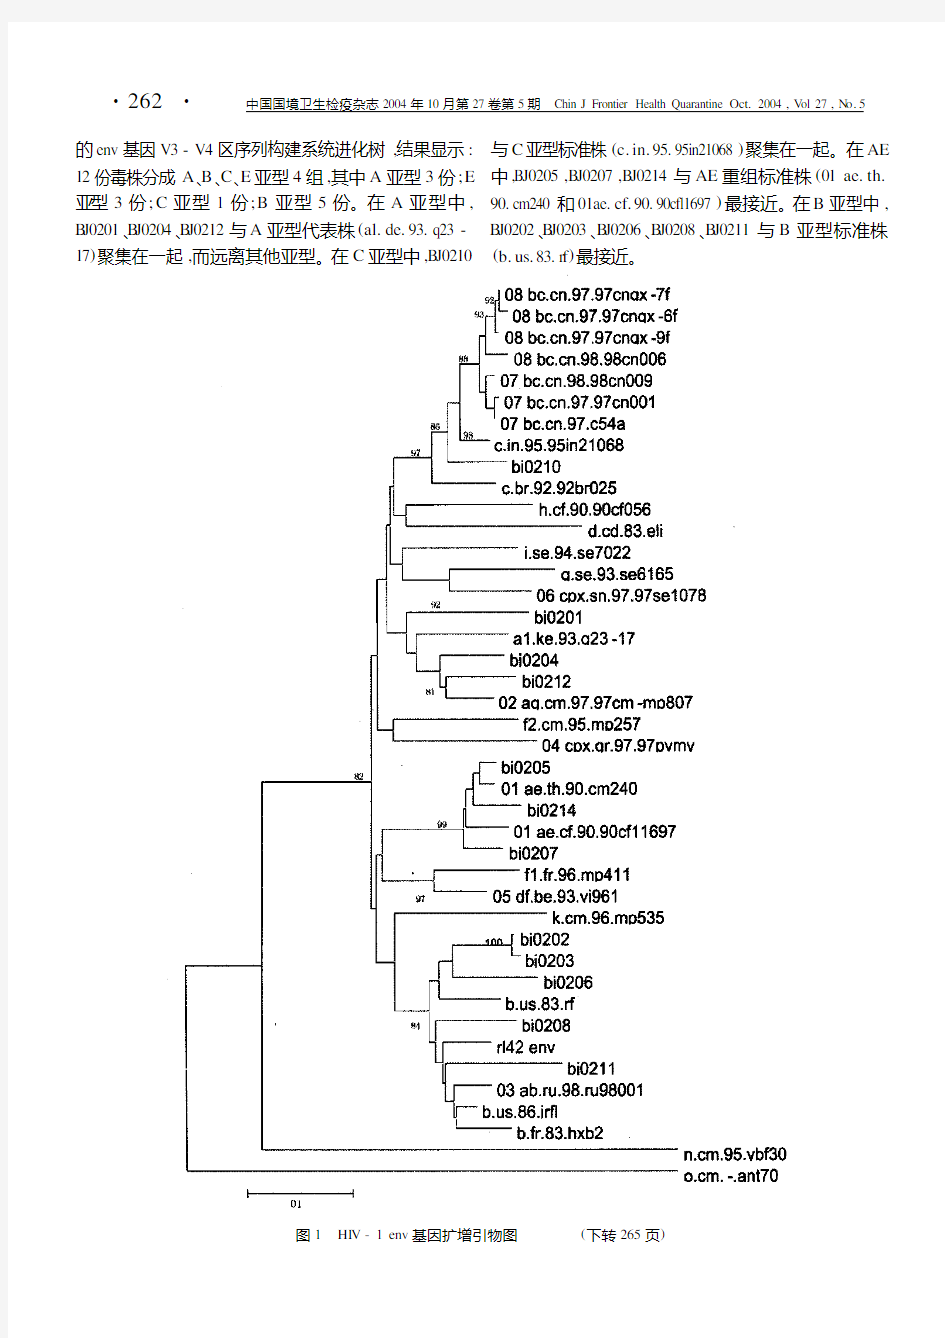 北京入境人员中HIV-1感染毒株的序列特征和亚型分析